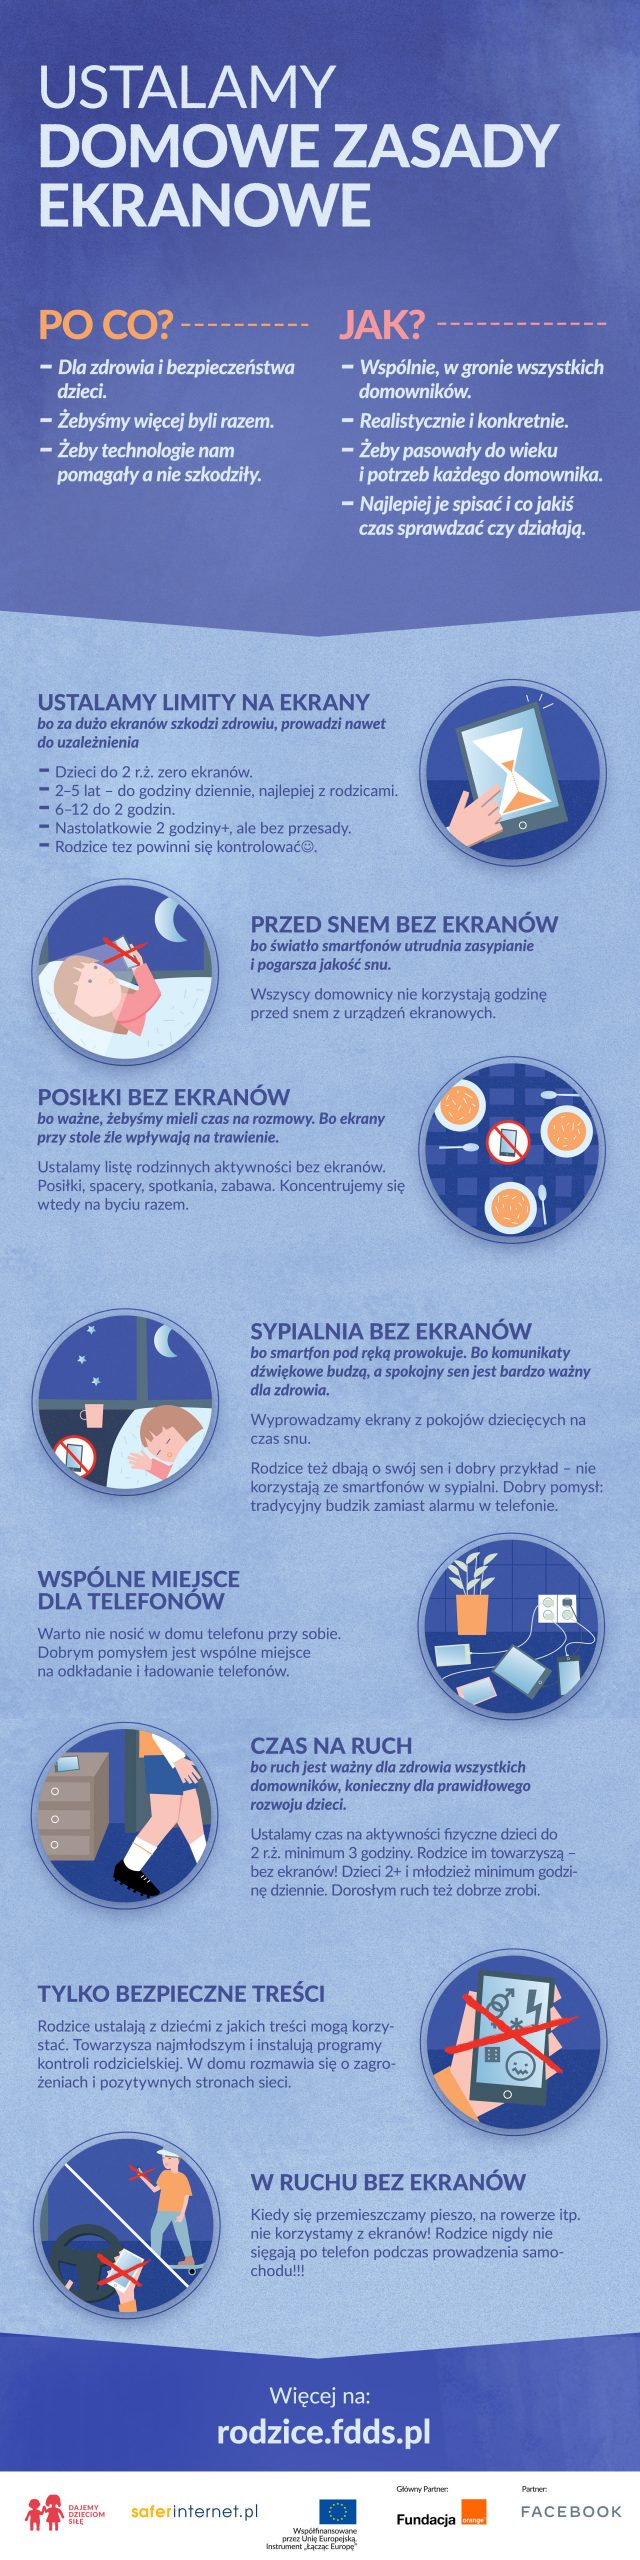 domowe_zasady_ekranowe_infografika-scaled